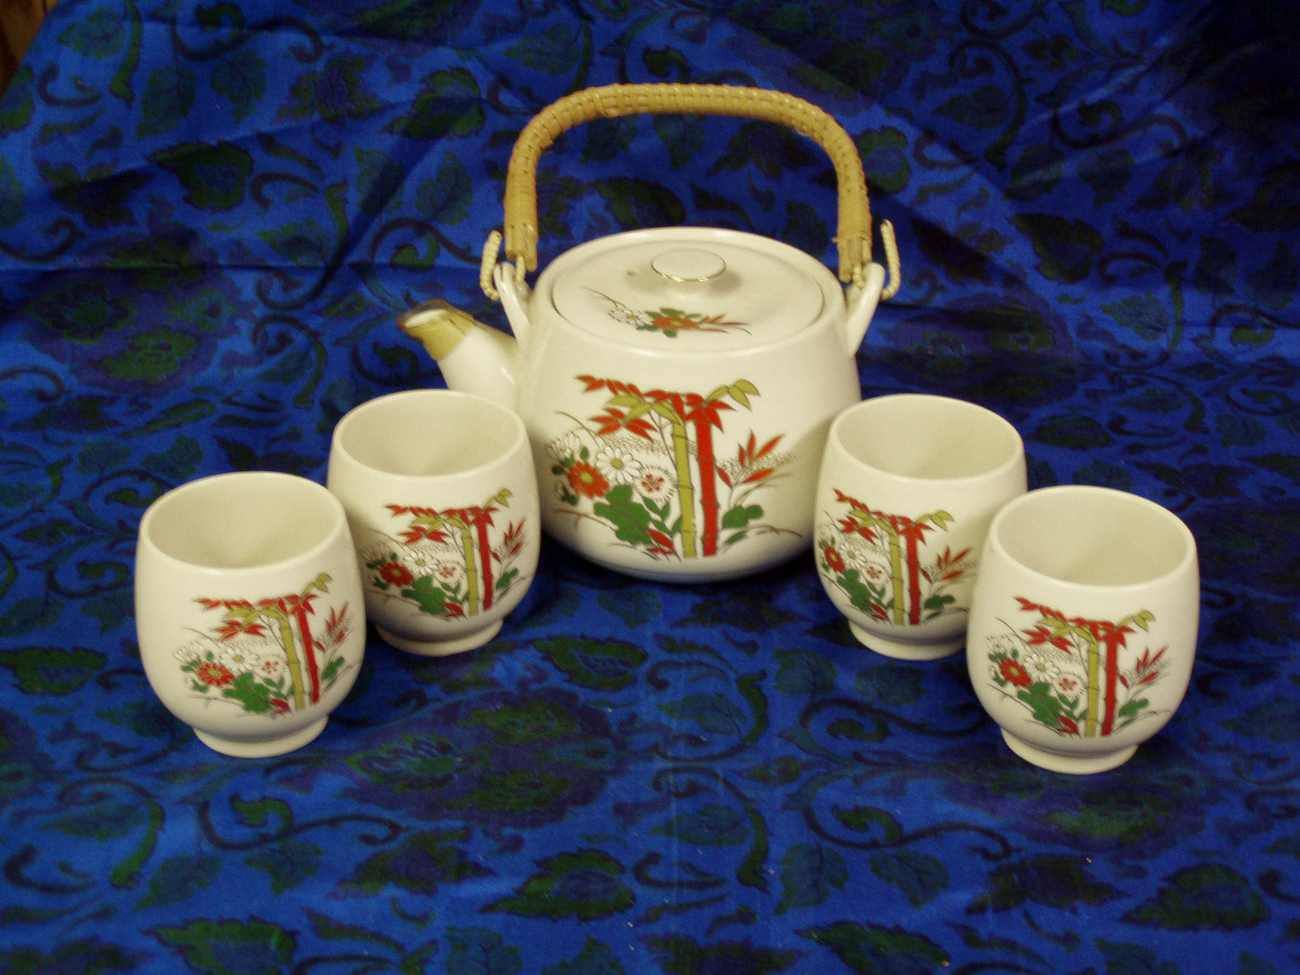 Oriental Tea Set - Teapot & 4 Cups - $9.00